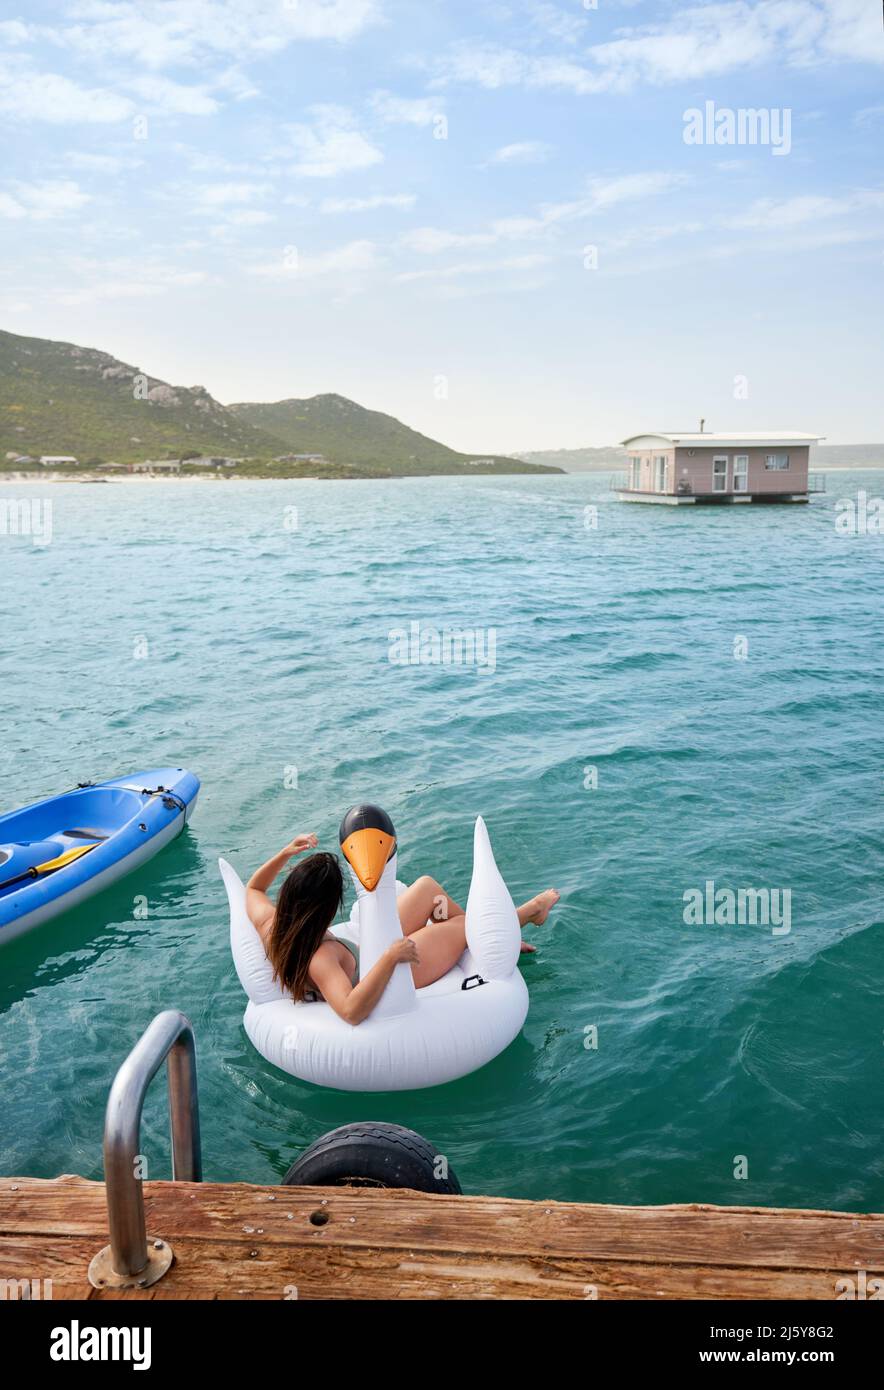 Frau, die sich auf einem aufblasbaren Schwan im blauen Ozean entspannt Stockfoto